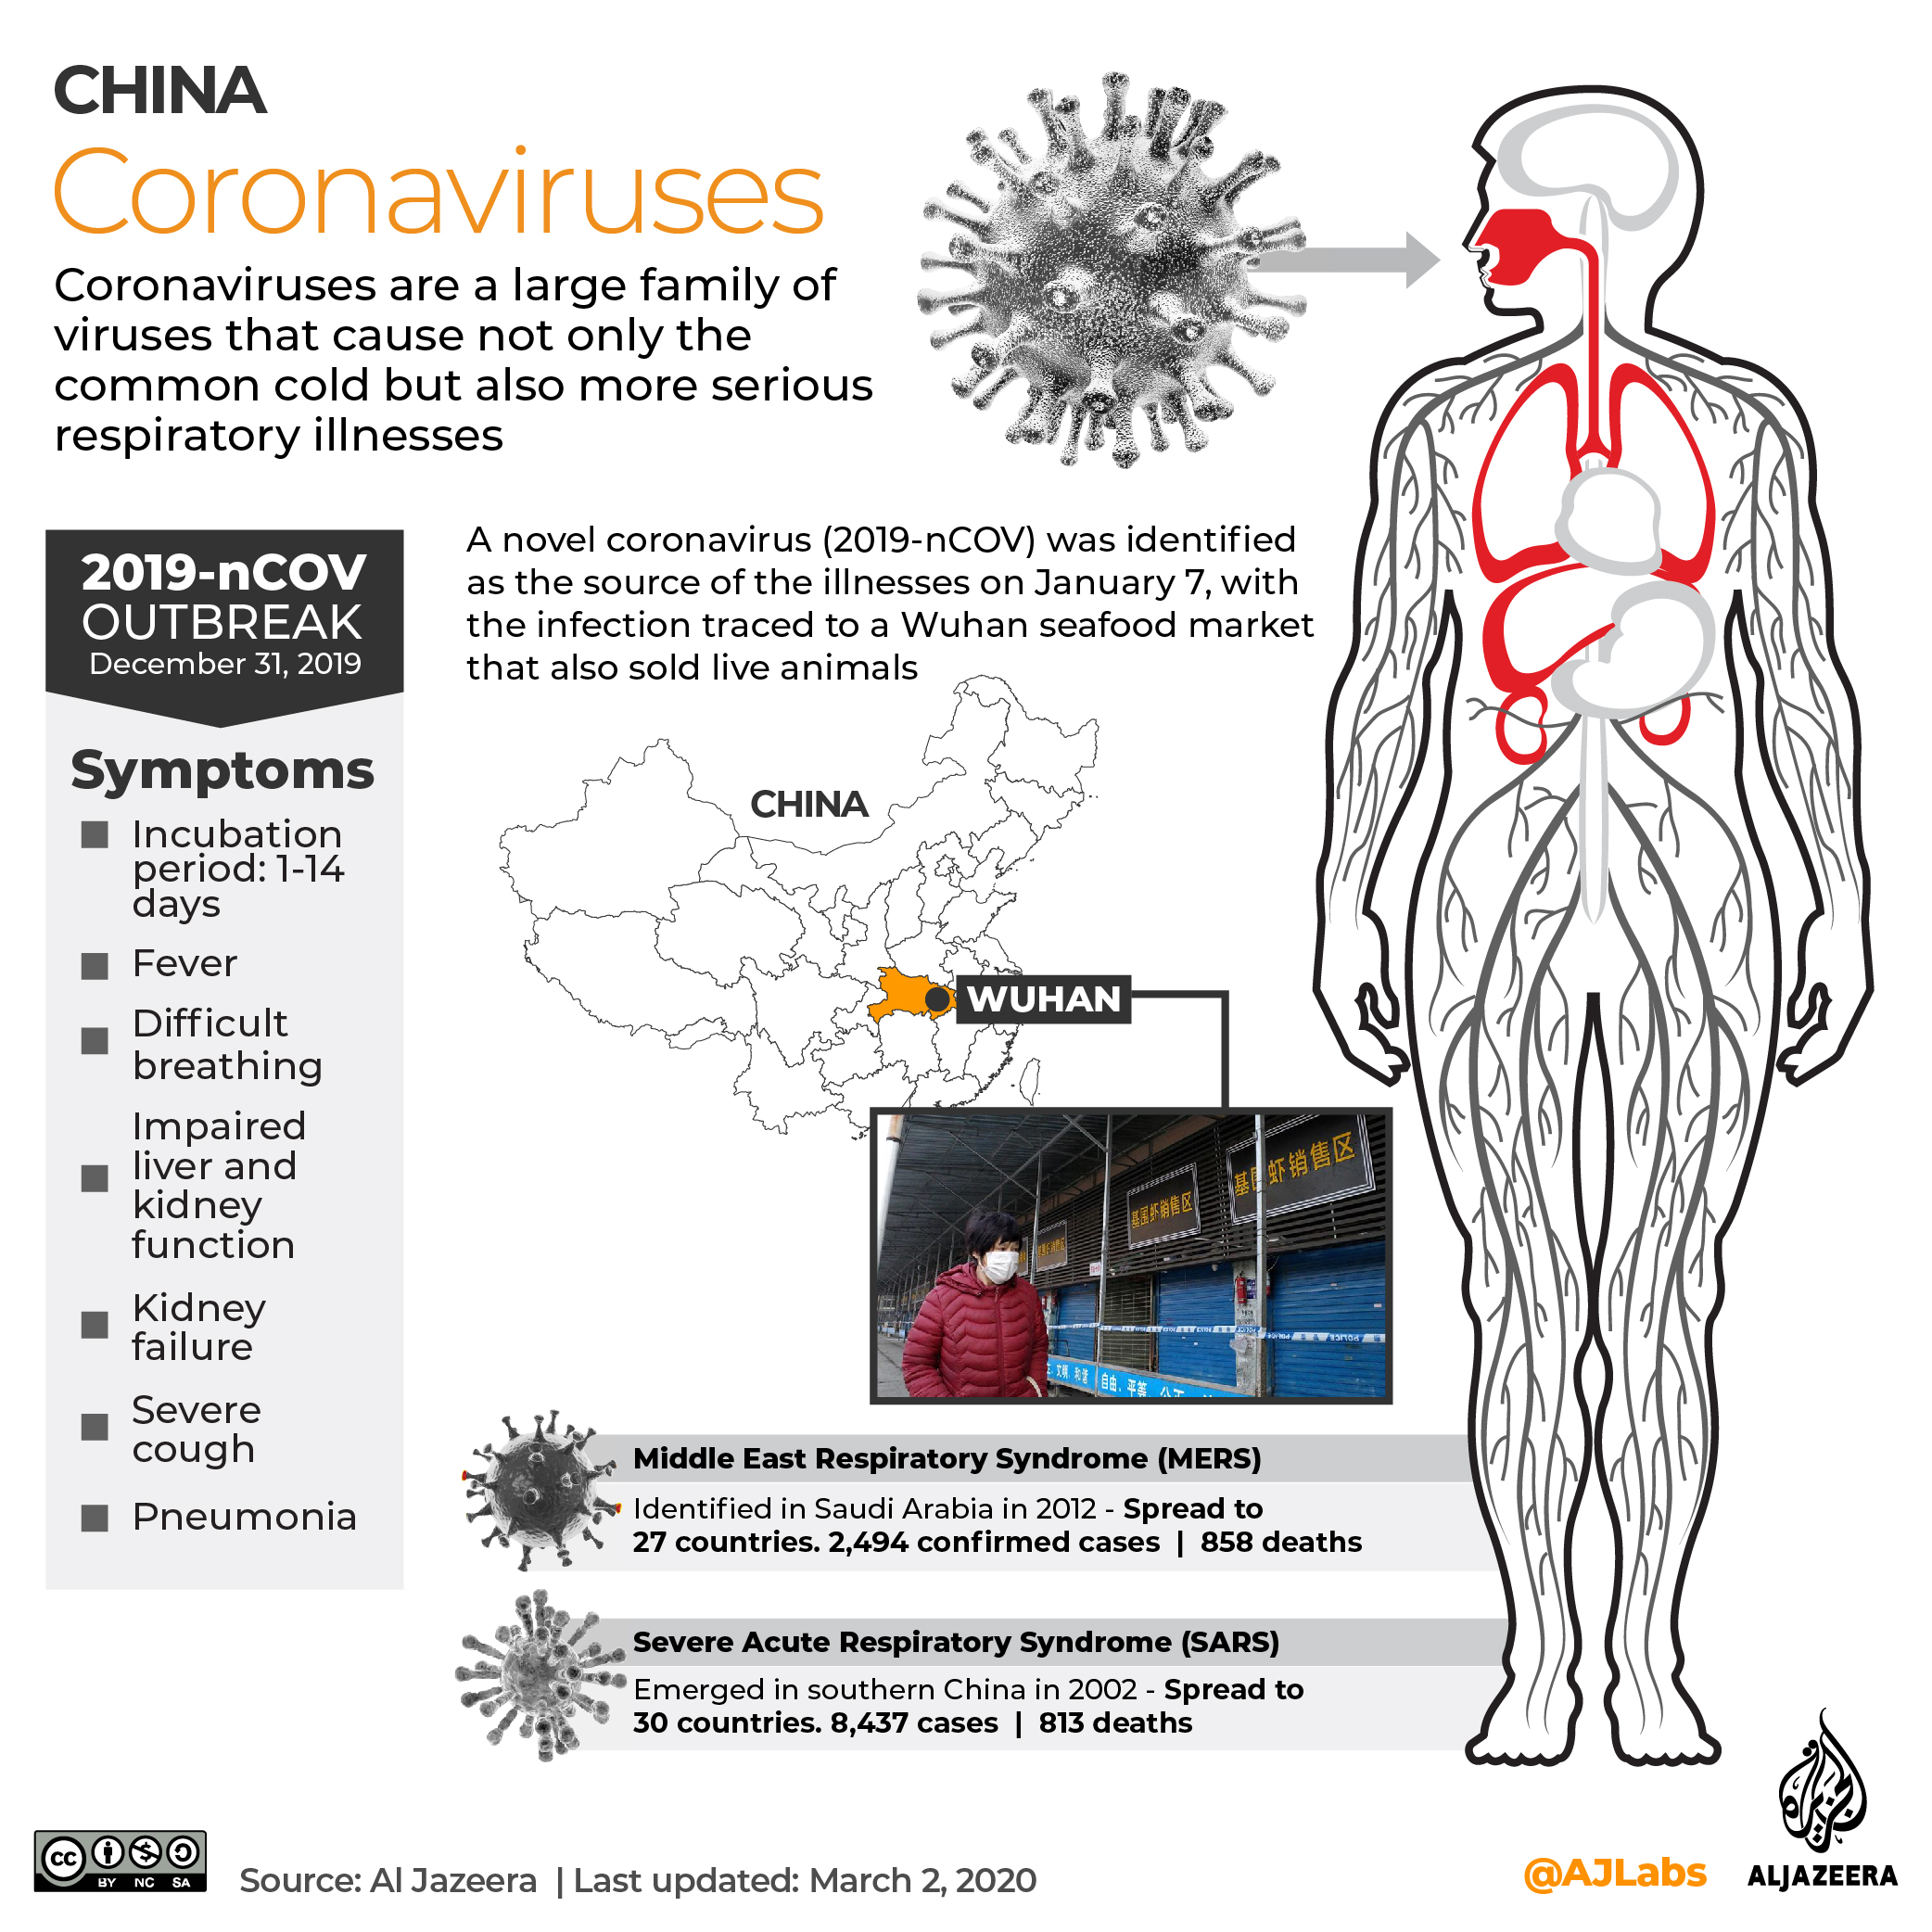 INTERACTIVE: Coronavirus 2019 - March 2, 2020 update